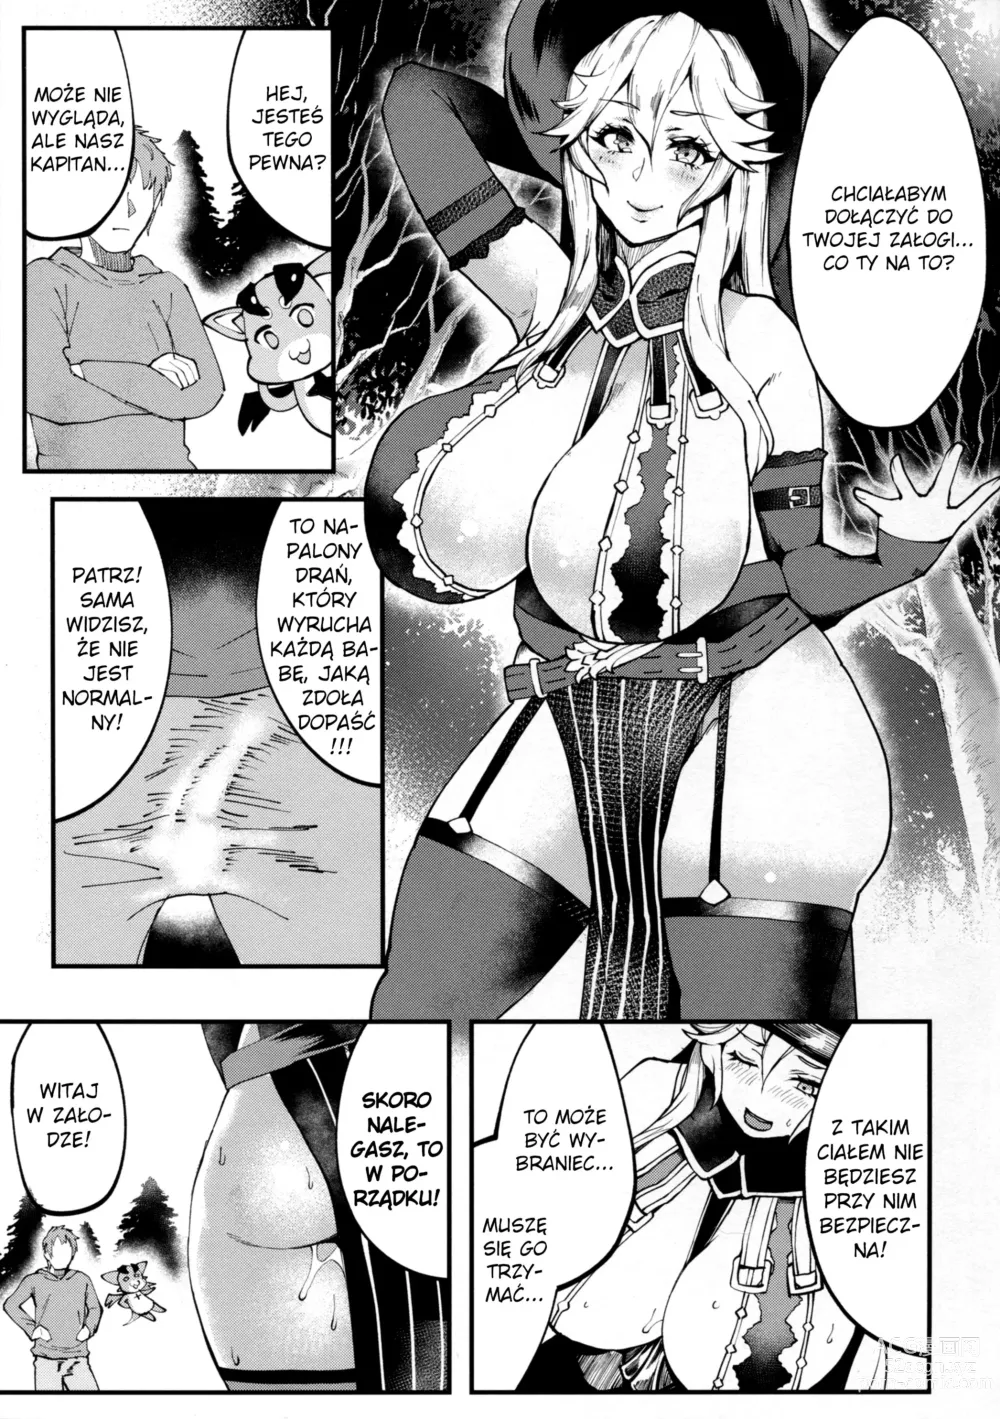 Page 3 of doujinshi Bitch Beach Witch